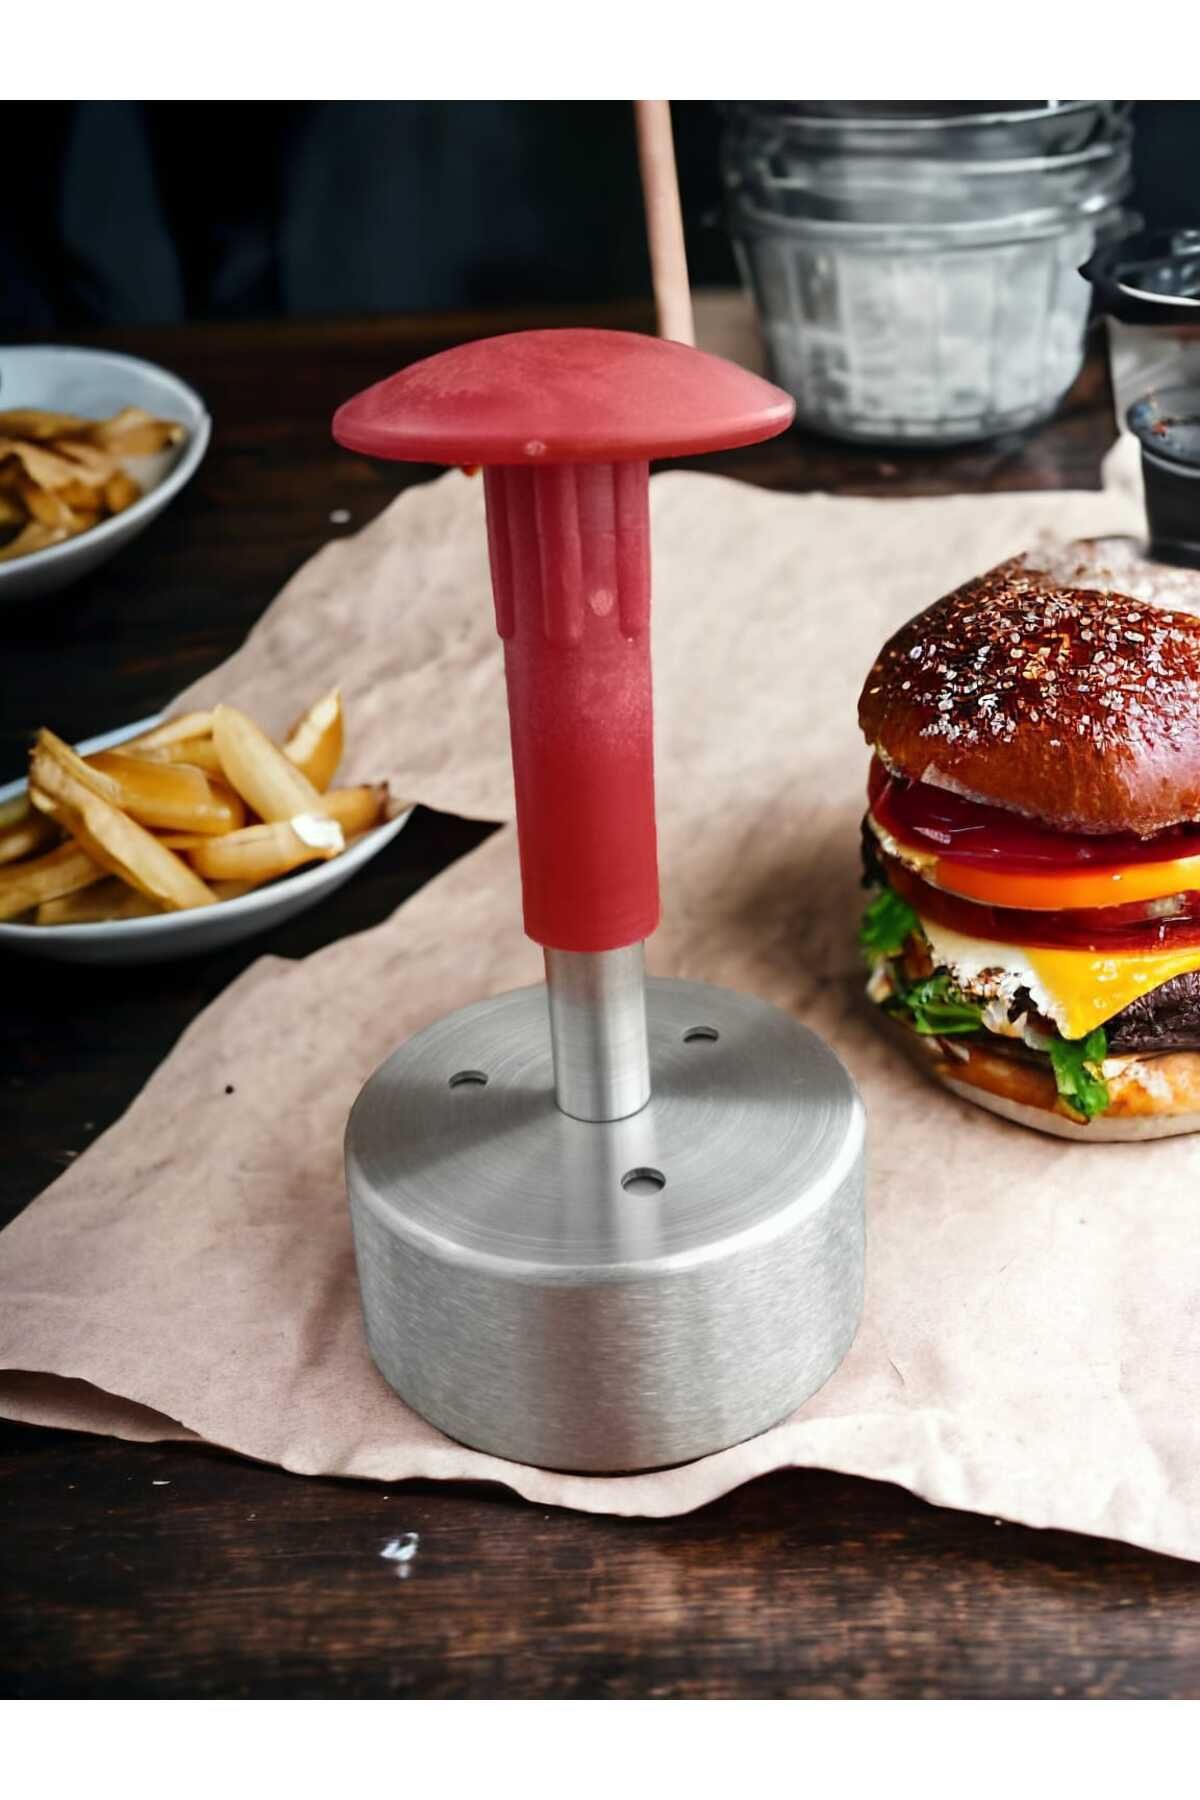 KURCH 7 Cm Hamburger Köfte Presi Basma Şekillendirme Aparatı Mini Burger Kalıbı